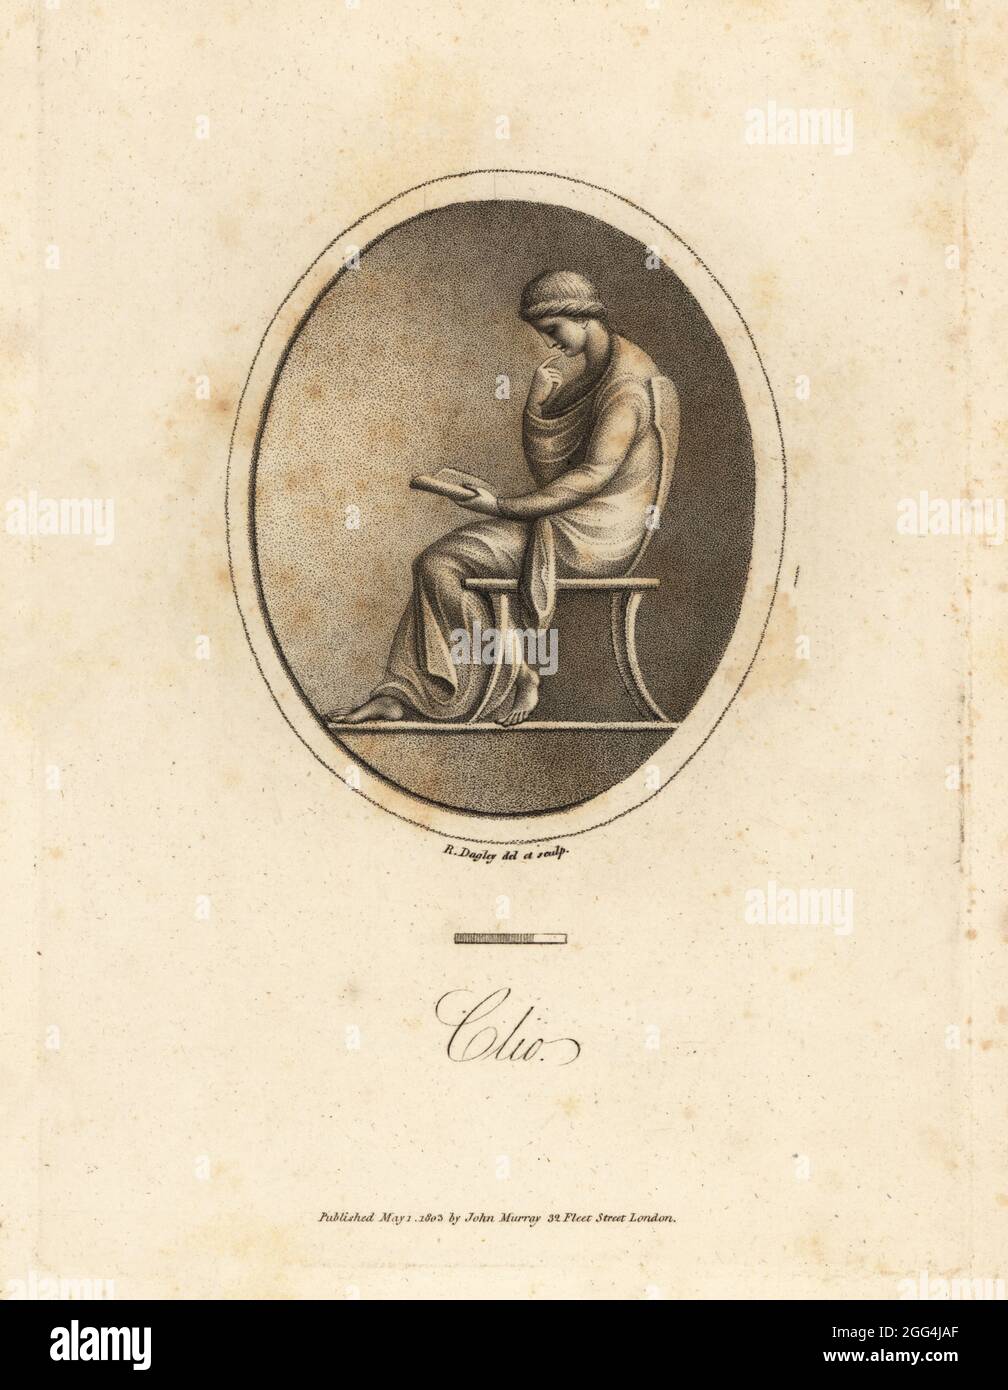 Figura di Clio, Muse of History, seduta su una sedia, lettura di un rotolo. Incisione in copperplate disegnata ed incisa da Richard Dagley di Gemme, selezionata dall'Antique, con illustrazioni, John Murray, Londra, 1804. Foto Stock